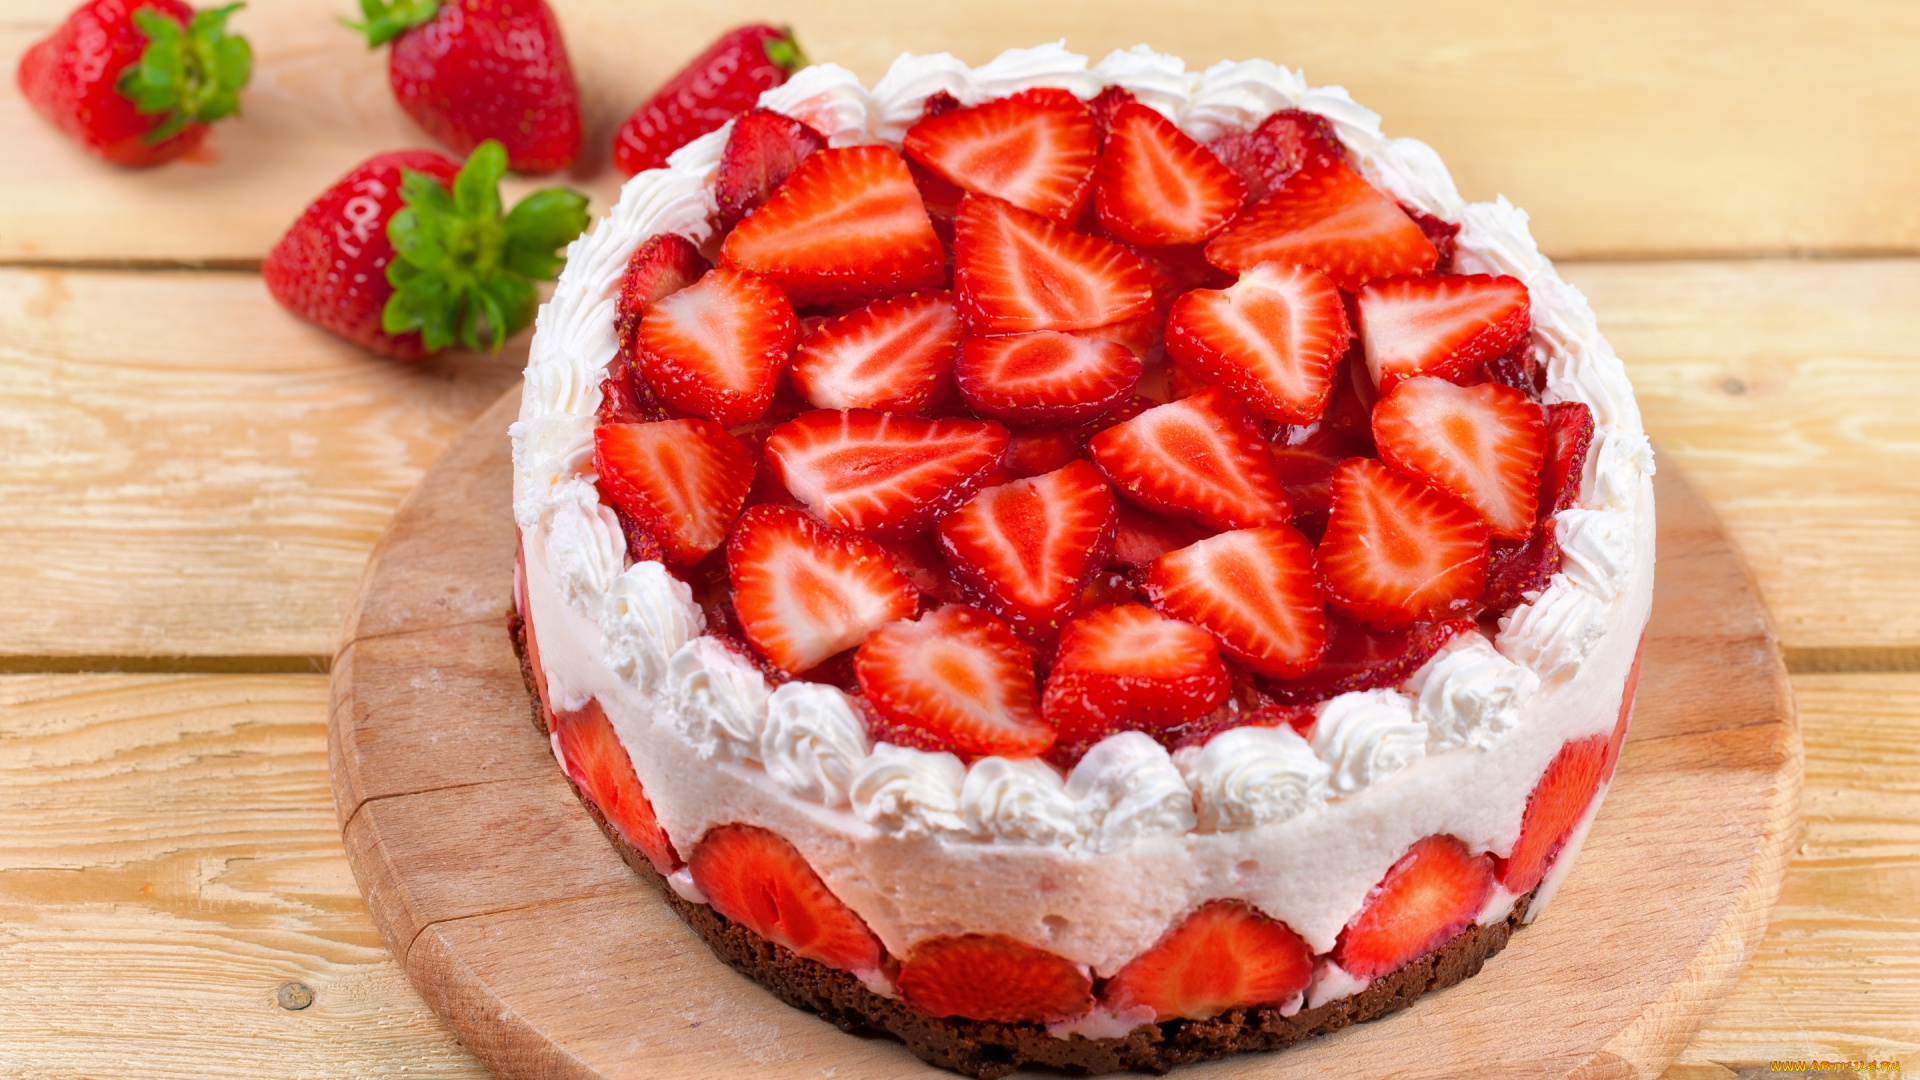 еда, торты, сладкое, ягоды, клубника, пирожное, торт, десерт, cake, dessert, крем, чизкейк, cheesecake, food, berries, strawberries